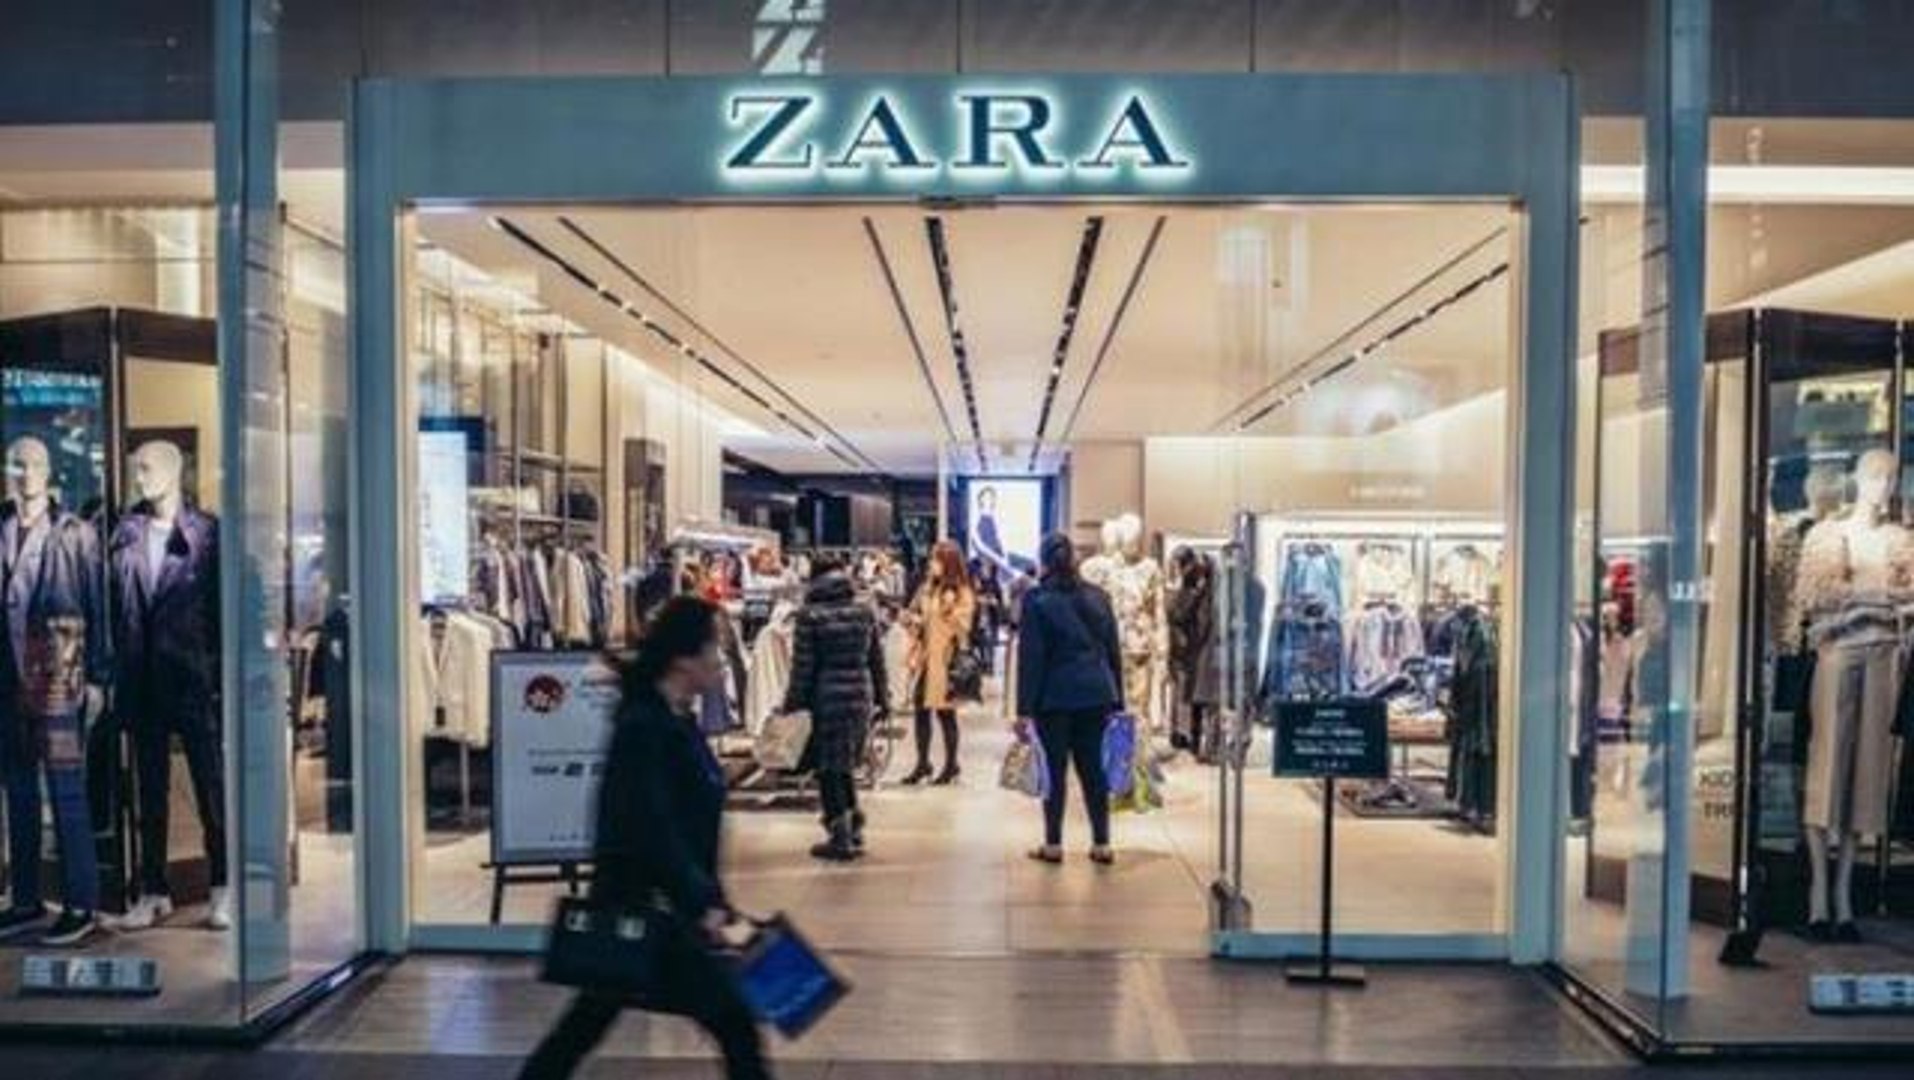 Ünlü giyim mağazası ZARA, ekmeği ayaklar altına alarak reklam yaptı! Sosyal  medya ayaklandı - Dailymotion Video